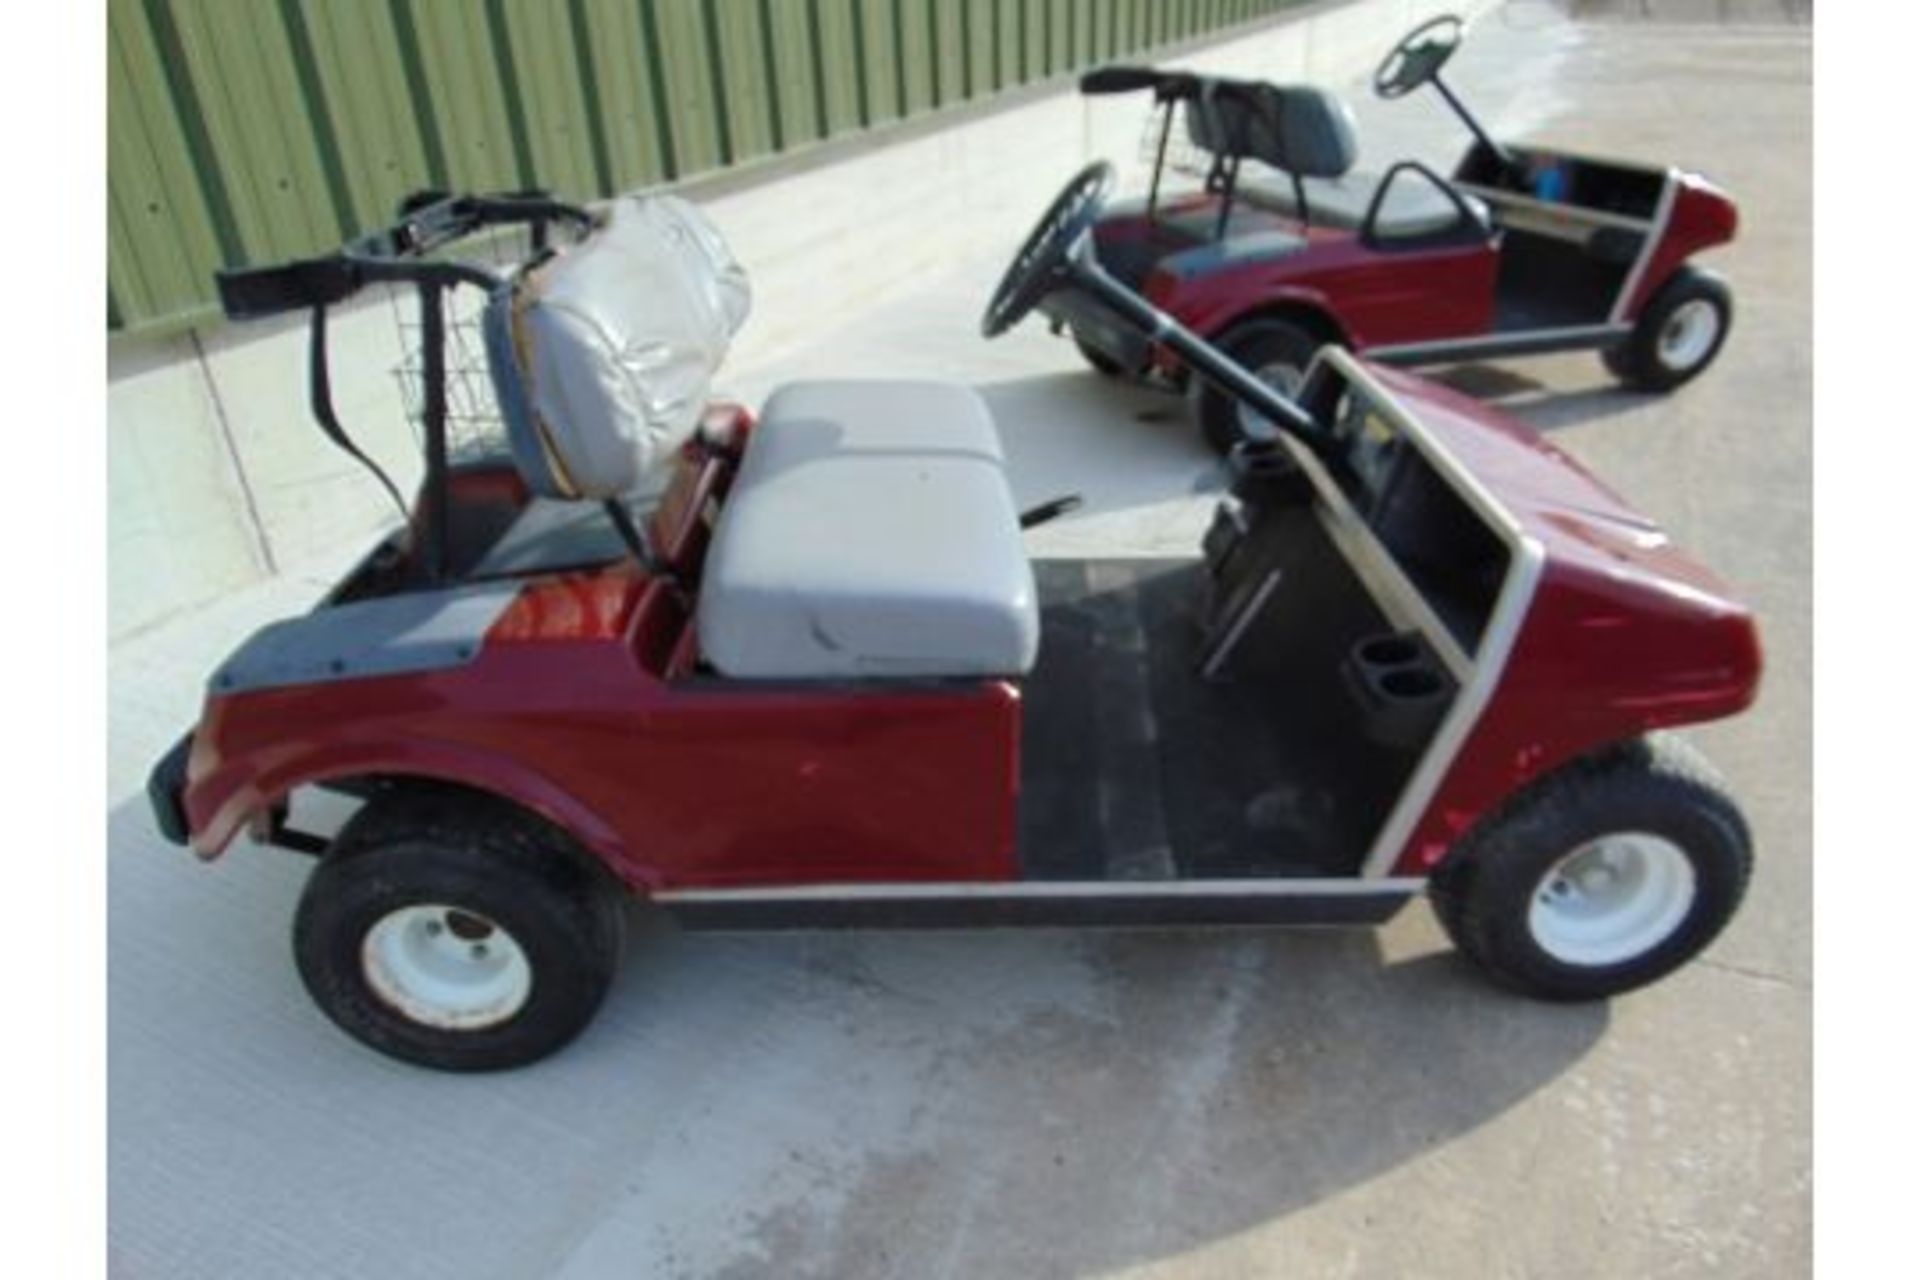 Club Car Golf Cart - Petrol Engine. - Image 2 of 16